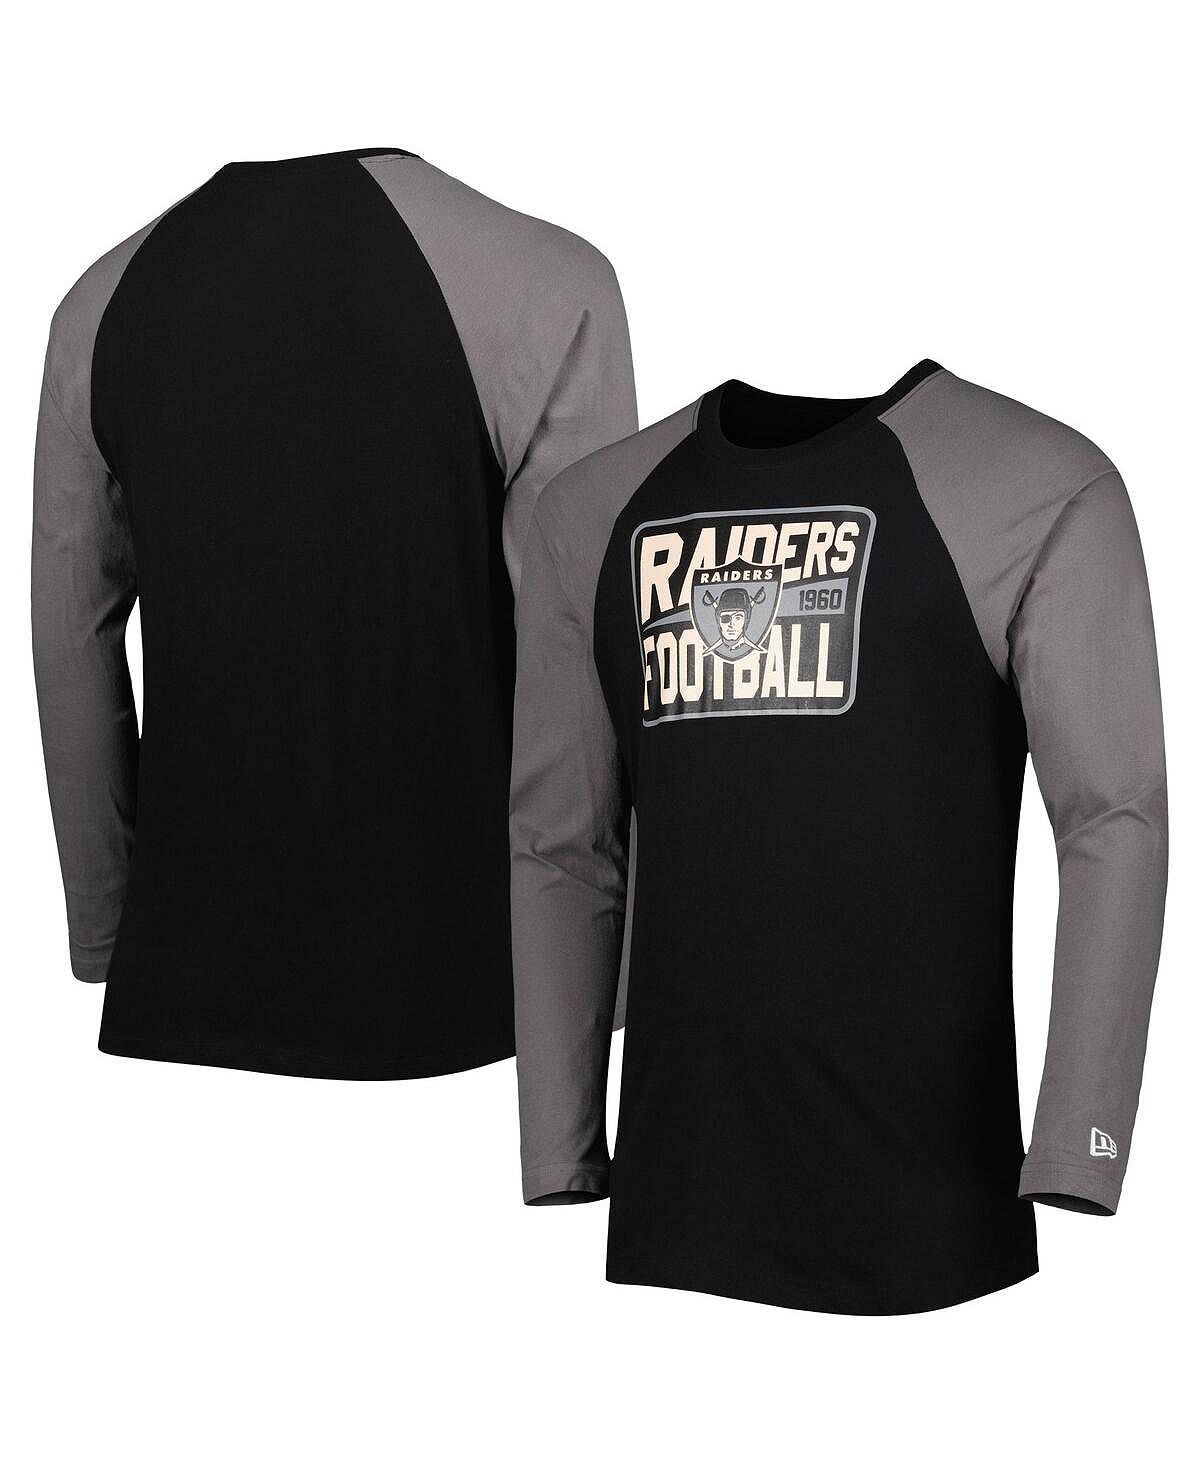 прессованный хайлайтер для лица las vegas affect shimmer 9 гр Мужская черная футболка с длинным рукавом Las Vegas Raiders Throwback реглан New Era